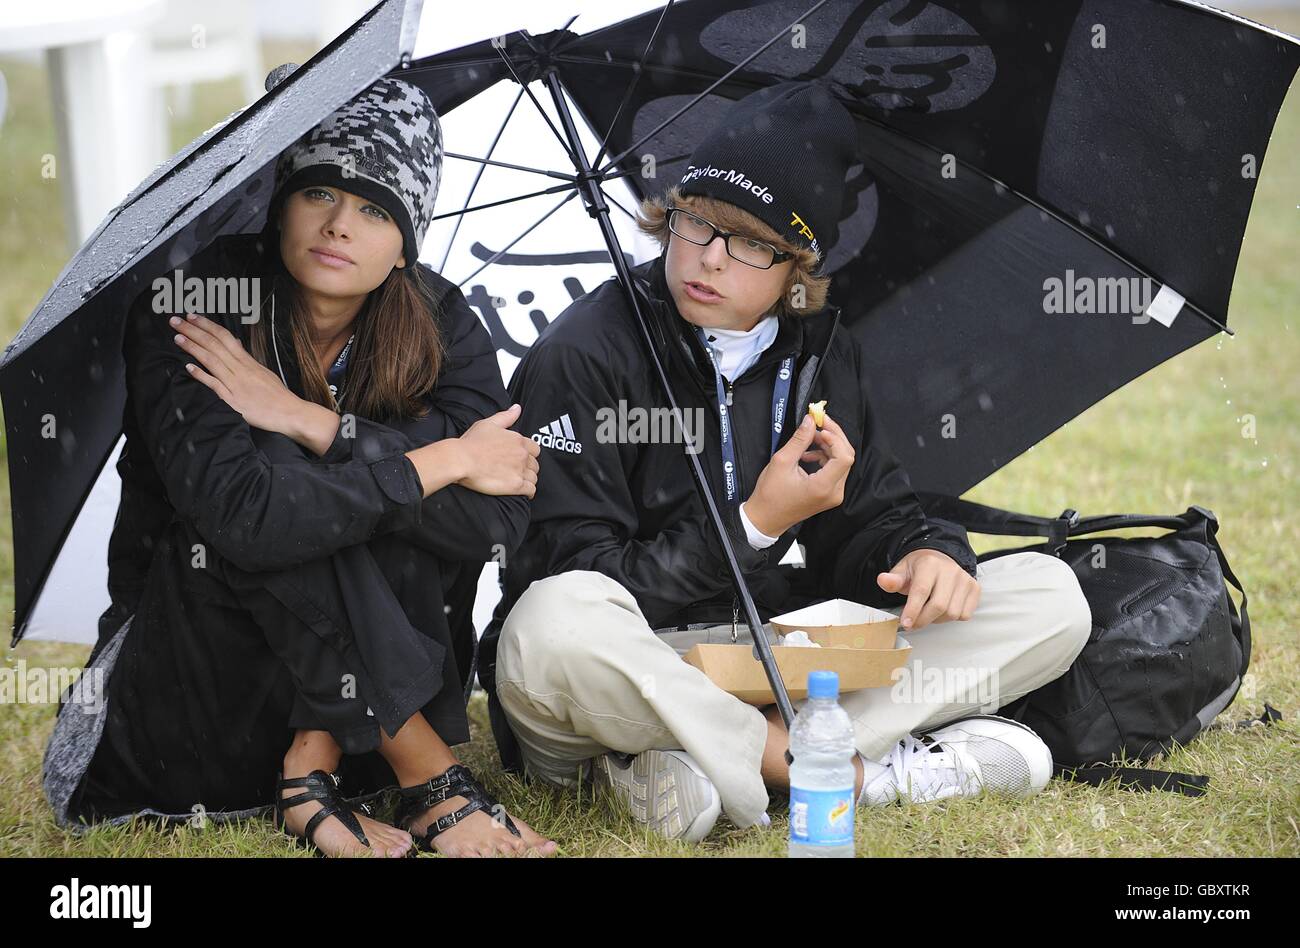 Paraguas de golf e imágenes de alta resolución - Alamy